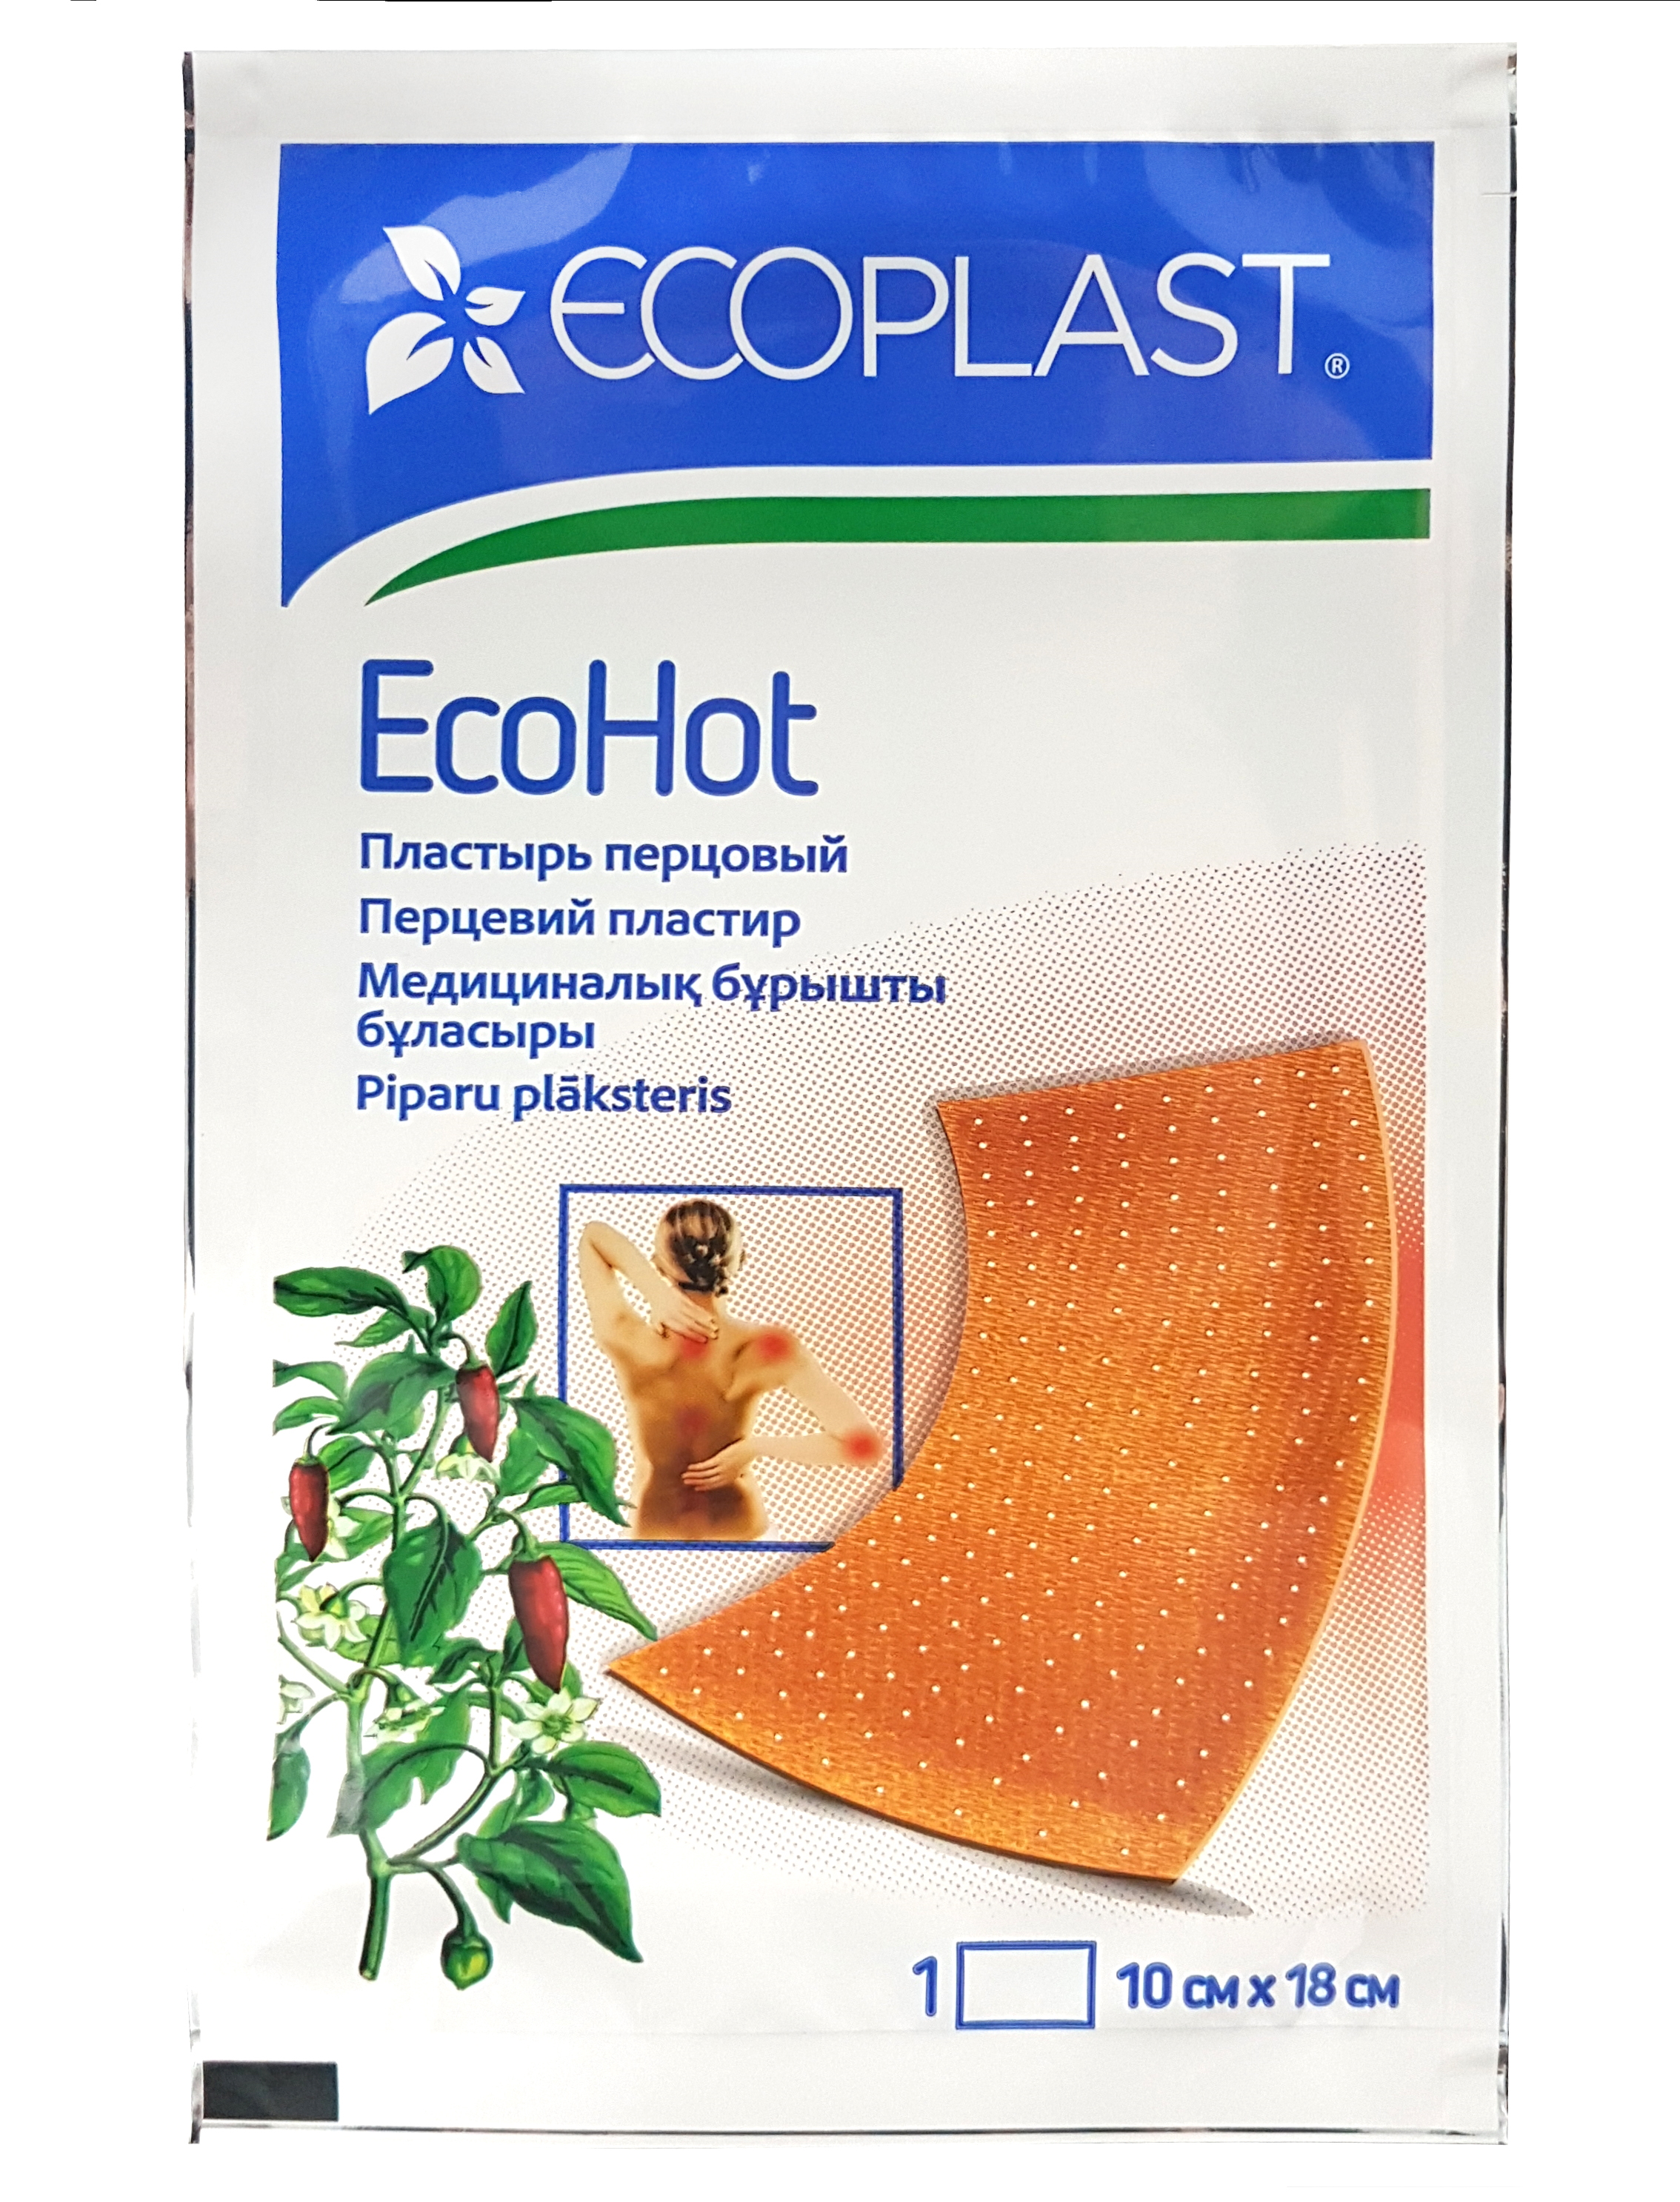 Купить Пластырь медицинский перцовый EcoHot 10x18 см., Ecoplast